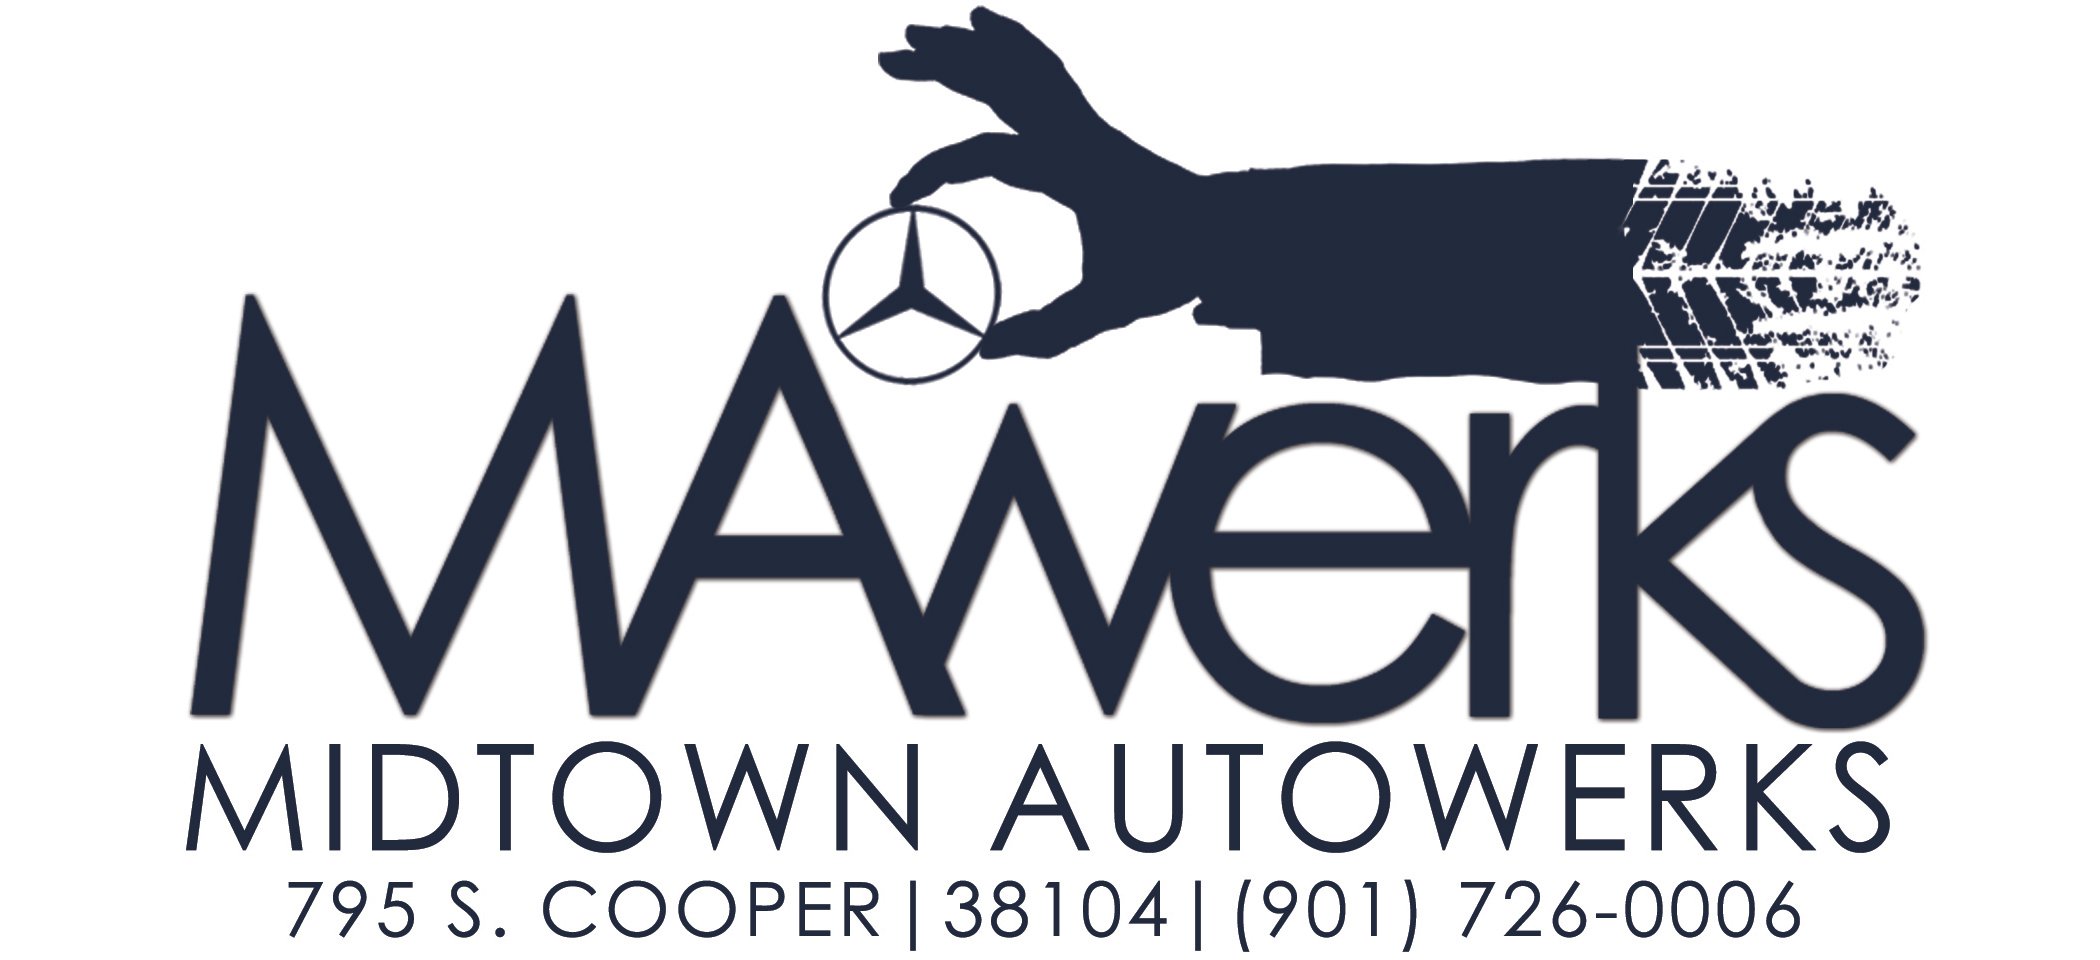 MAwerks Logo1.jpg